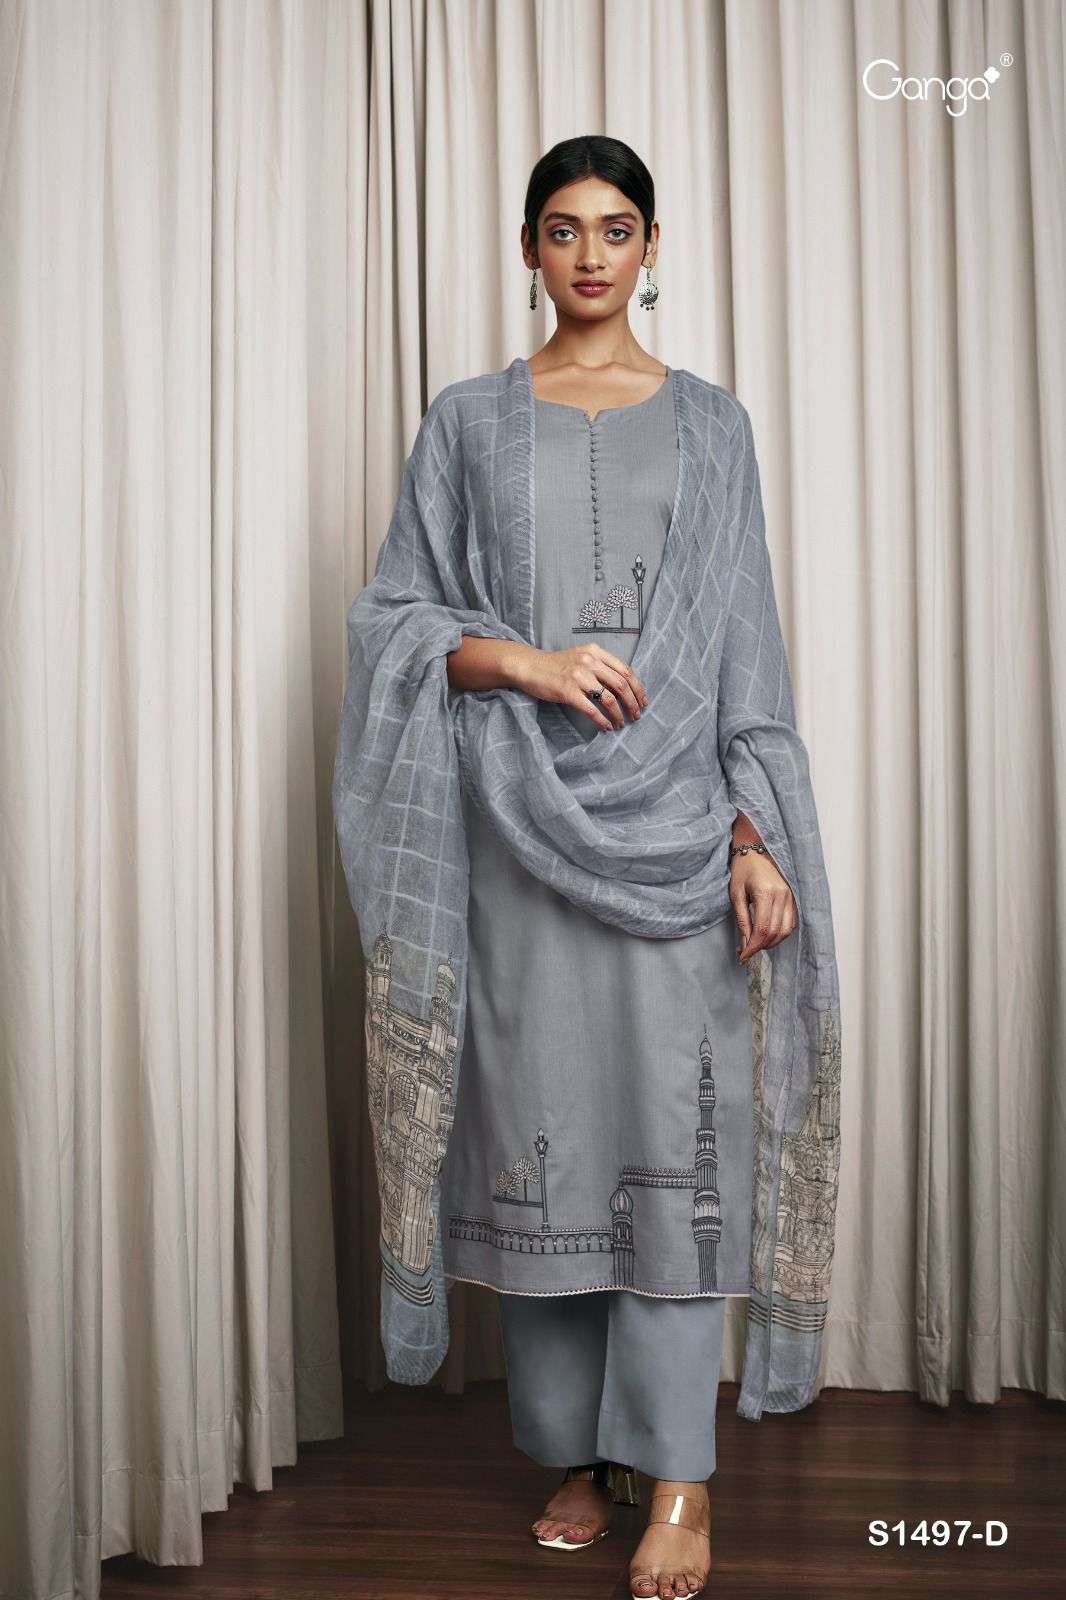 ganga tanaya 1497 series exclusive designer salwar kameez catalogue manufacturer surat 